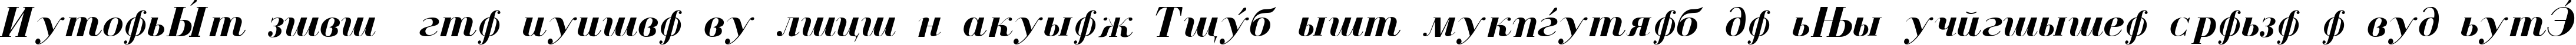 Пример написания шрифтом Cyrillic Bold-Italic текста на испанском